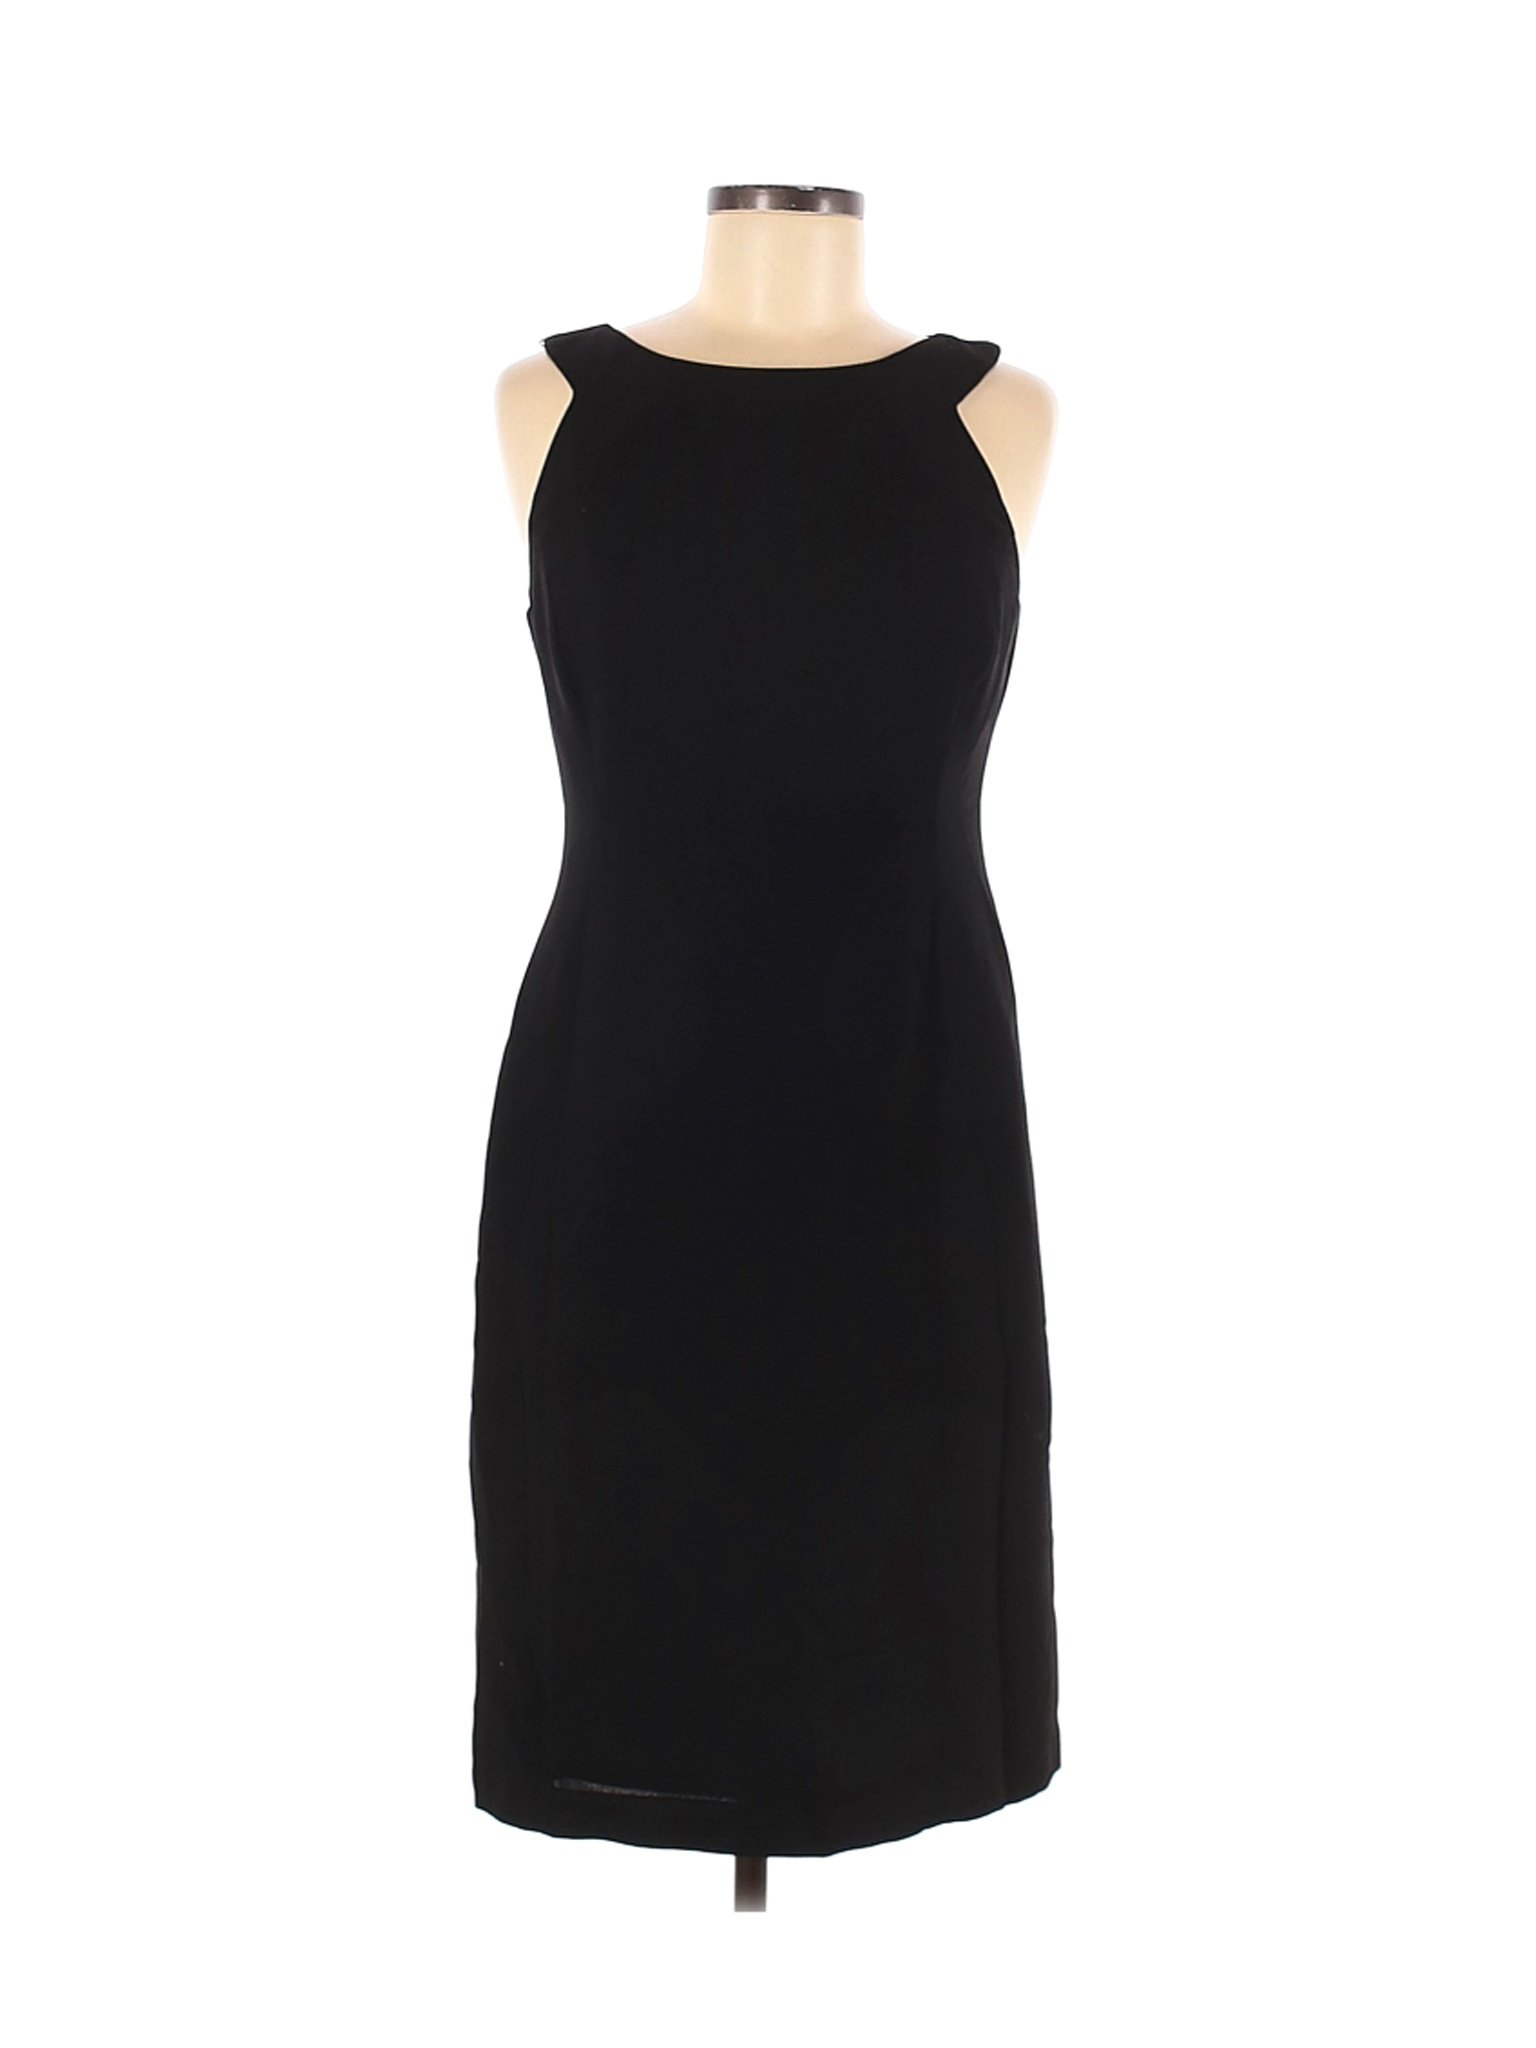 Jones New York Women Black Casual Dress 6 | eBay